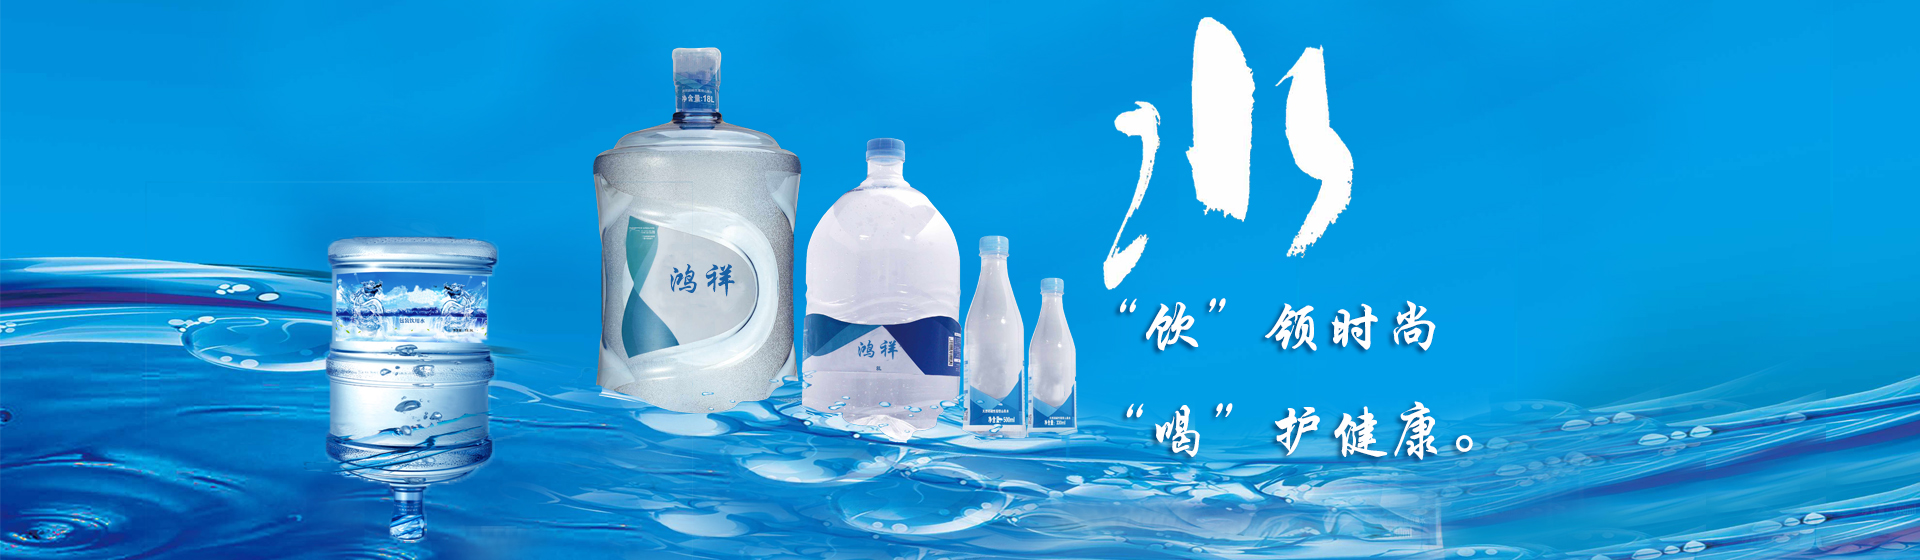 贵州顺风鸿祥塑料制品有限责任公司【官网】